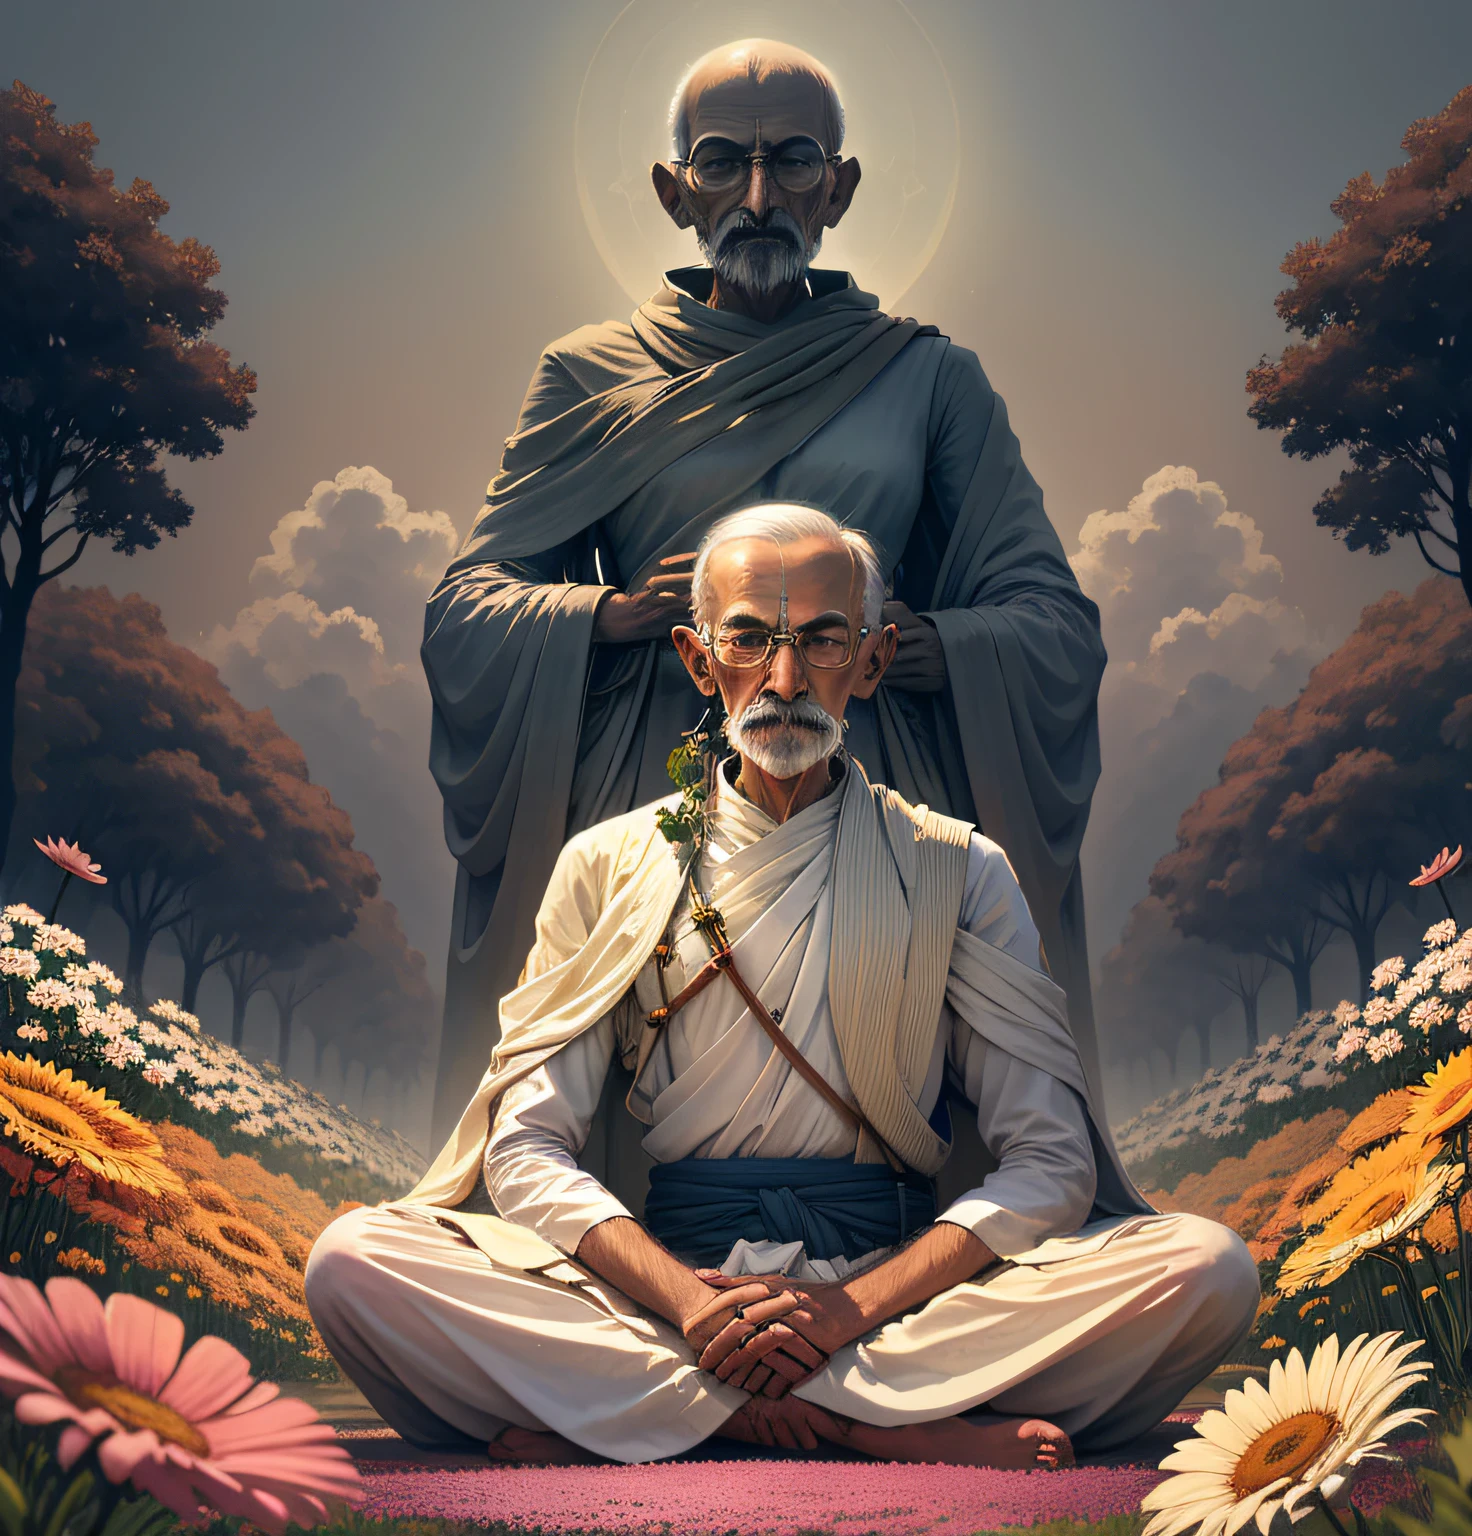 Um homem pacífico com uma mensagem poderosa, Mahatma Gandhi ergue-se alto em um campo de flores vibrantes, seus olhos fechados em meditação enquanto ele contempla o caminho para a verdadeira .